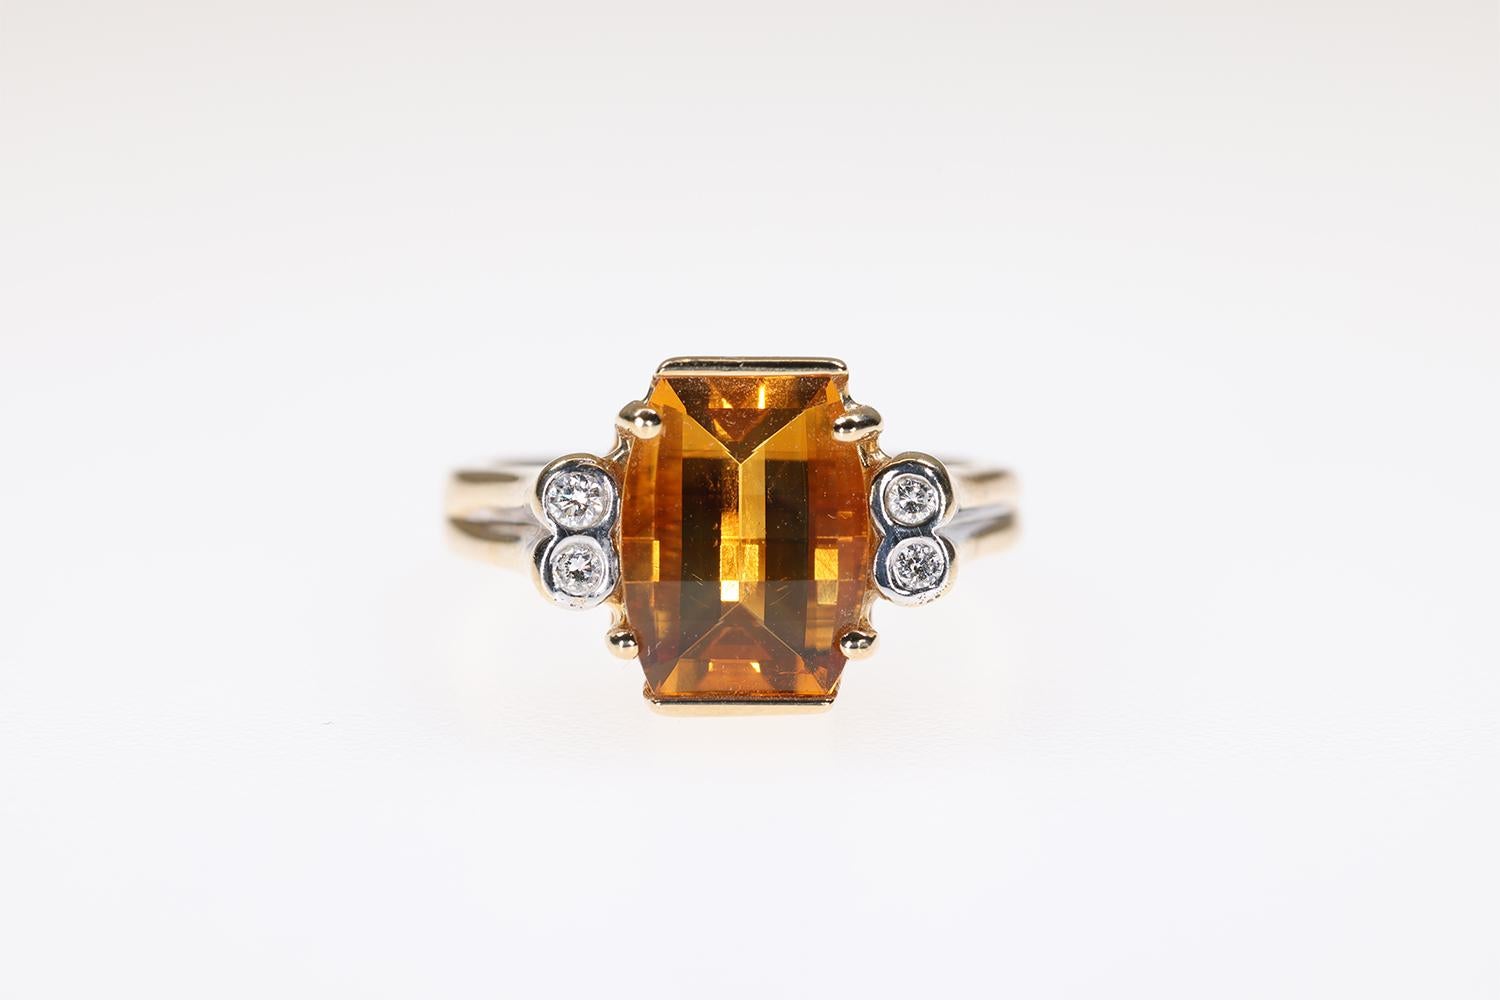 Dieser Ring aus 14-karätigem Gelbgold hat einen modernen und doch klassischen Charakter. Der Citrin in der Mitte hat eine tiefe, satte goldene Farbe und die seitlichen runden Brillanten setzen vier schöne Akzente. Dies ist ein wunderschöner Ring,